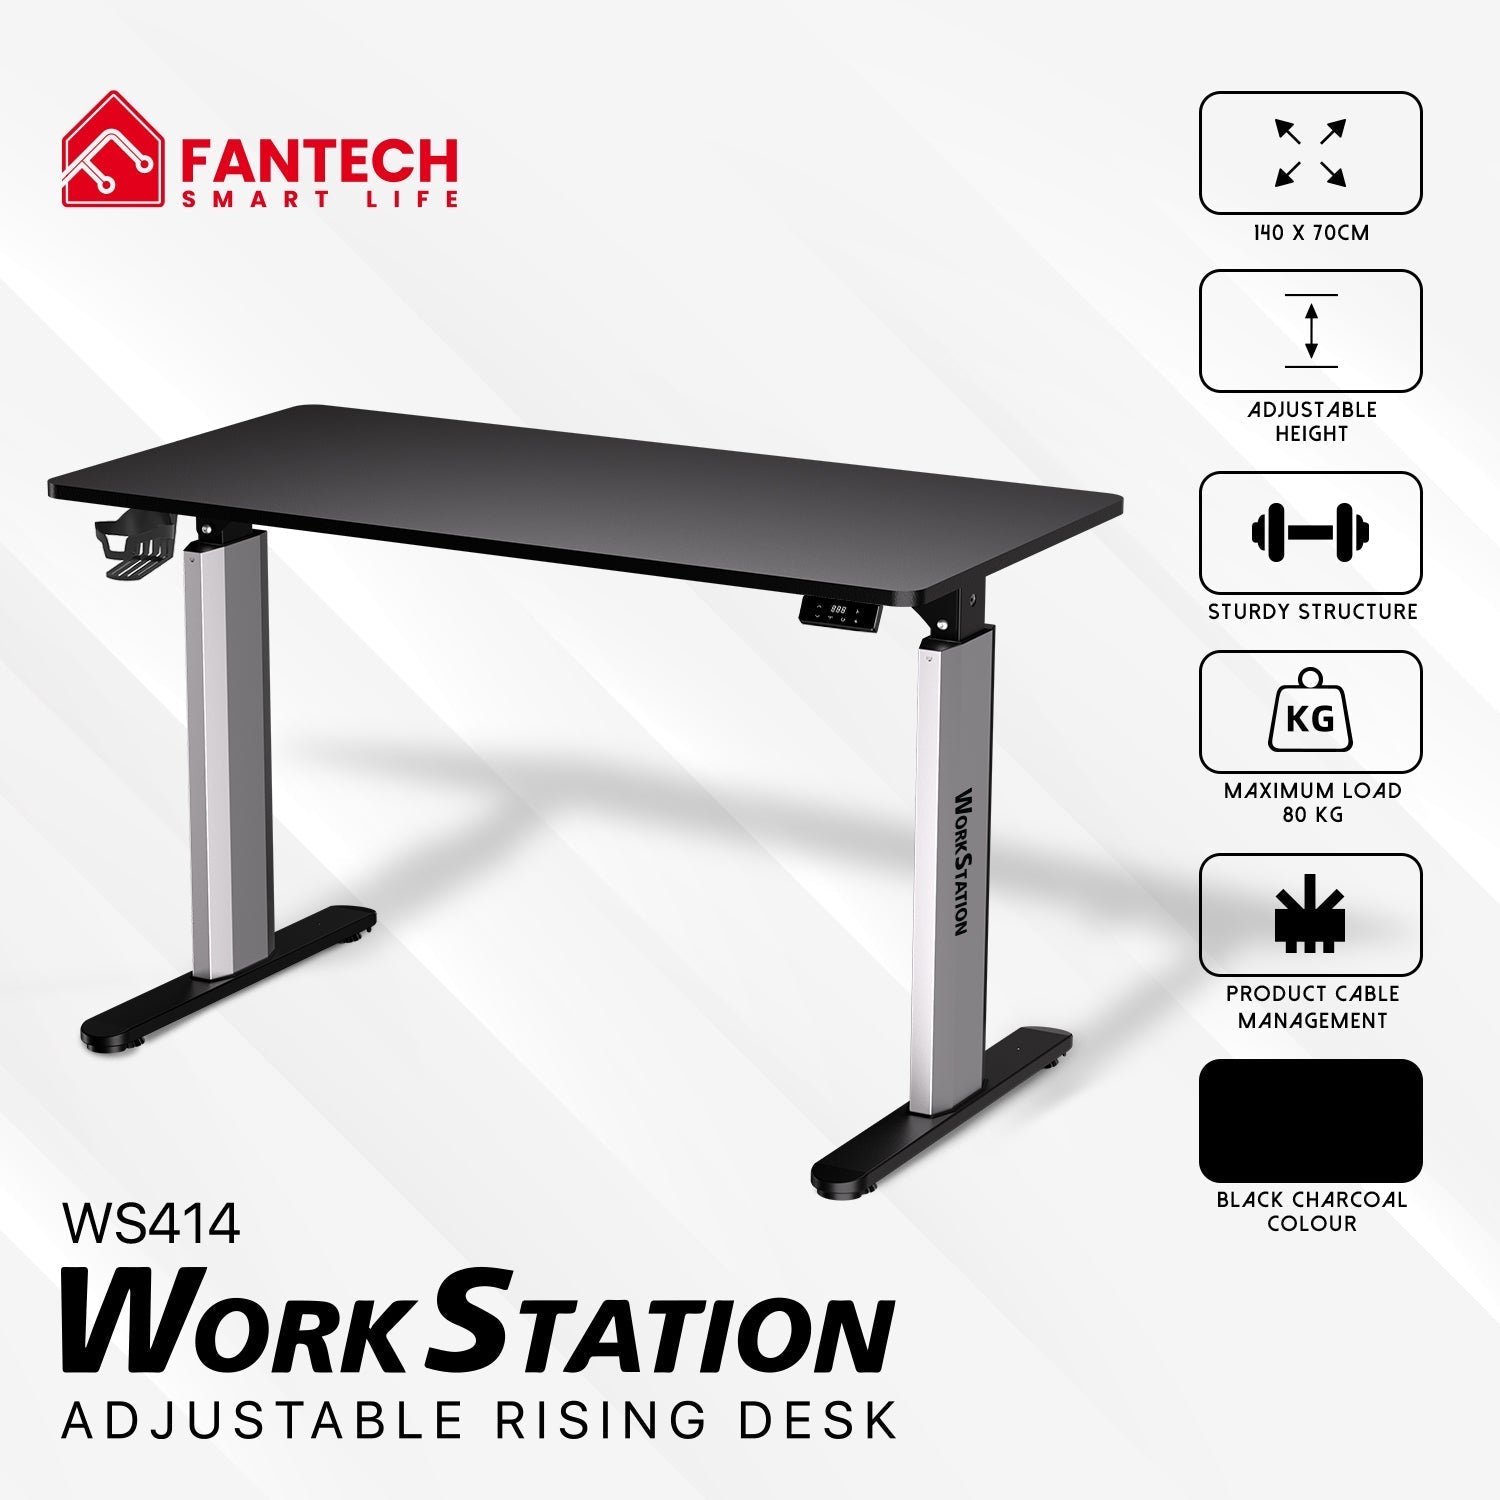 Fantech WS414 Work Station Asjustable Rising Desk JOD 165